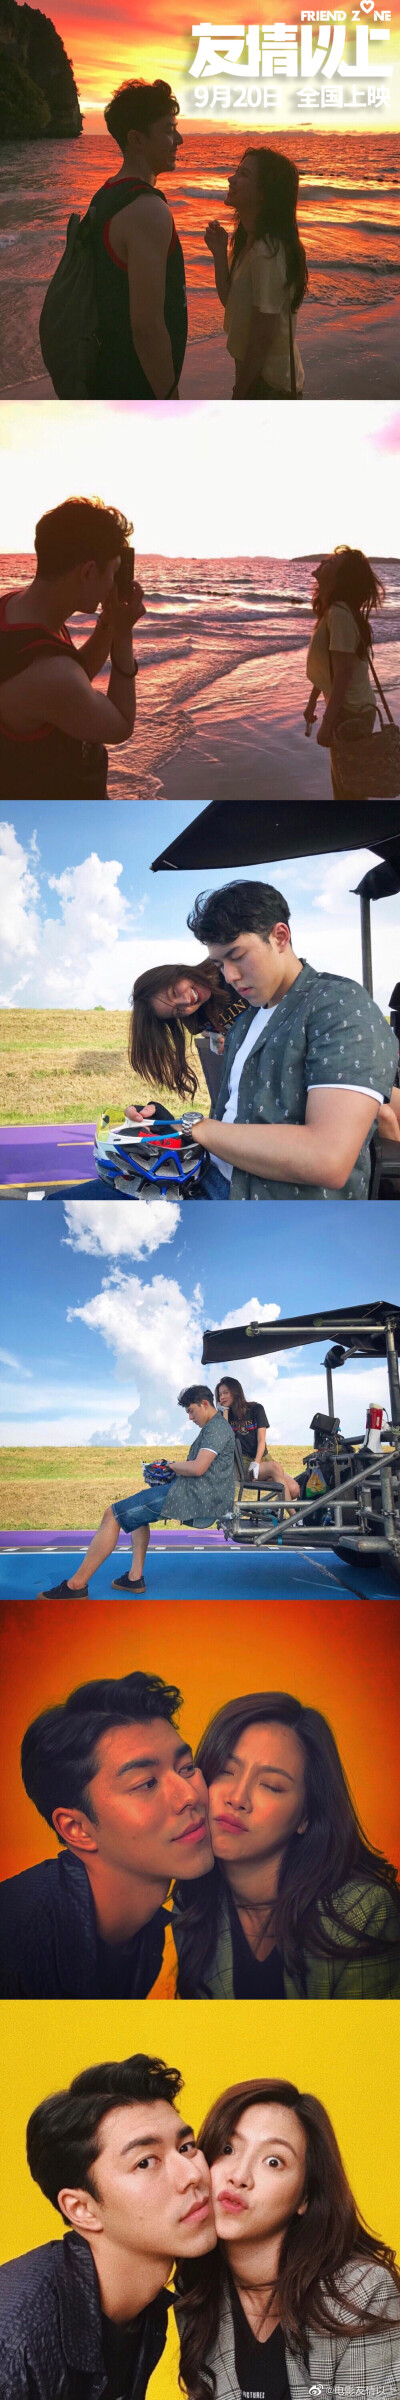 《友情以上》是由泰国GDH559电影公司出品的爱情喜剧片，由查亚诺普·布恩帕拉科布执导，平采娜·乐维瑟派布恩、奈哈·西贡索邦领衔主演。该片于2019年2月14日在泰国上映。2019年9月20日在中国上映。该片讲述了相识多年…